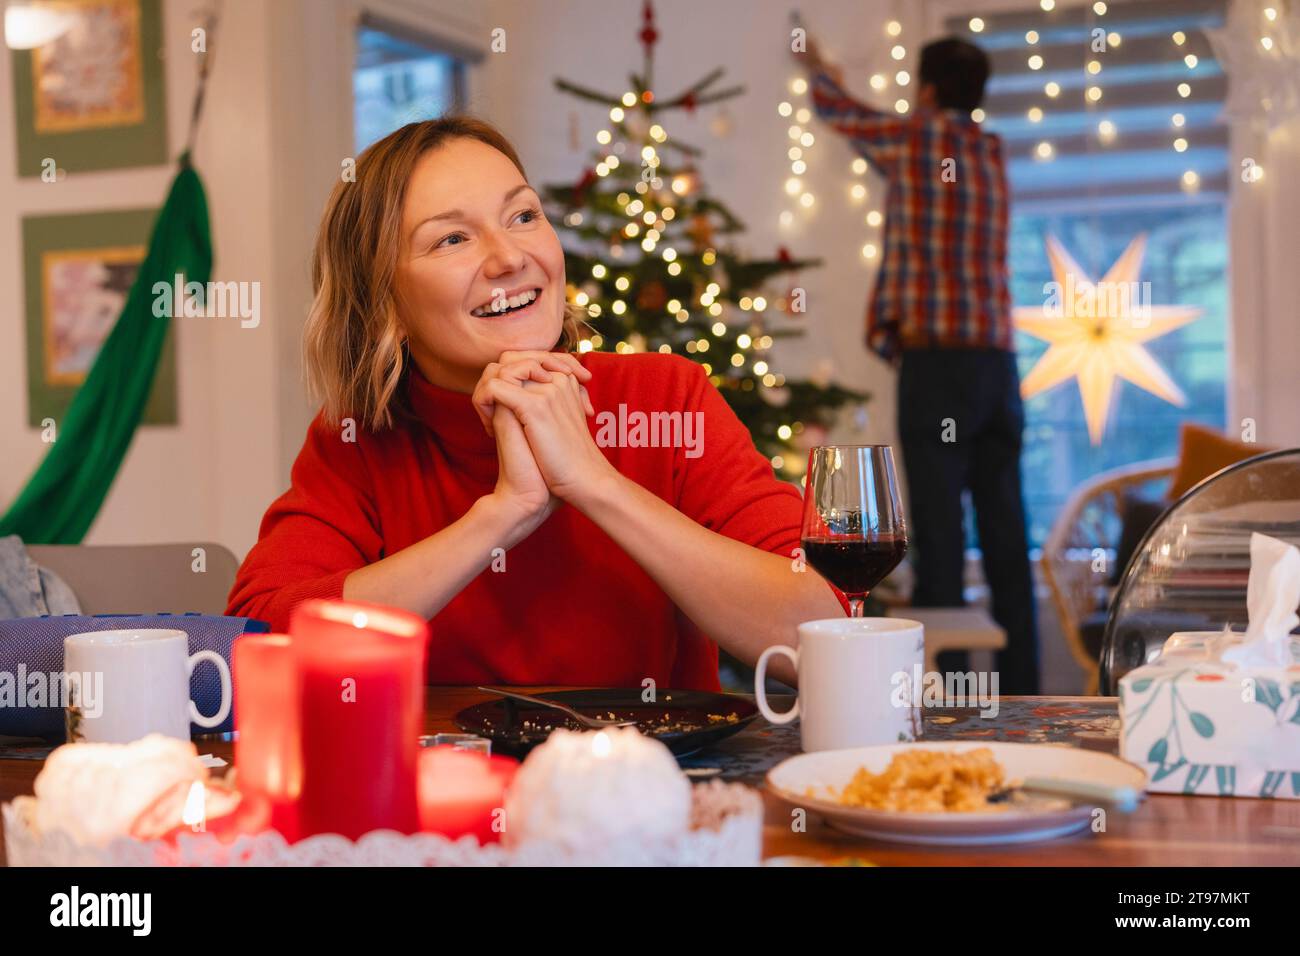 Glückliche Frau mit gefesselten Händen, die während der Weihnachtsfeier am Esstisch sitzt Stockfoto